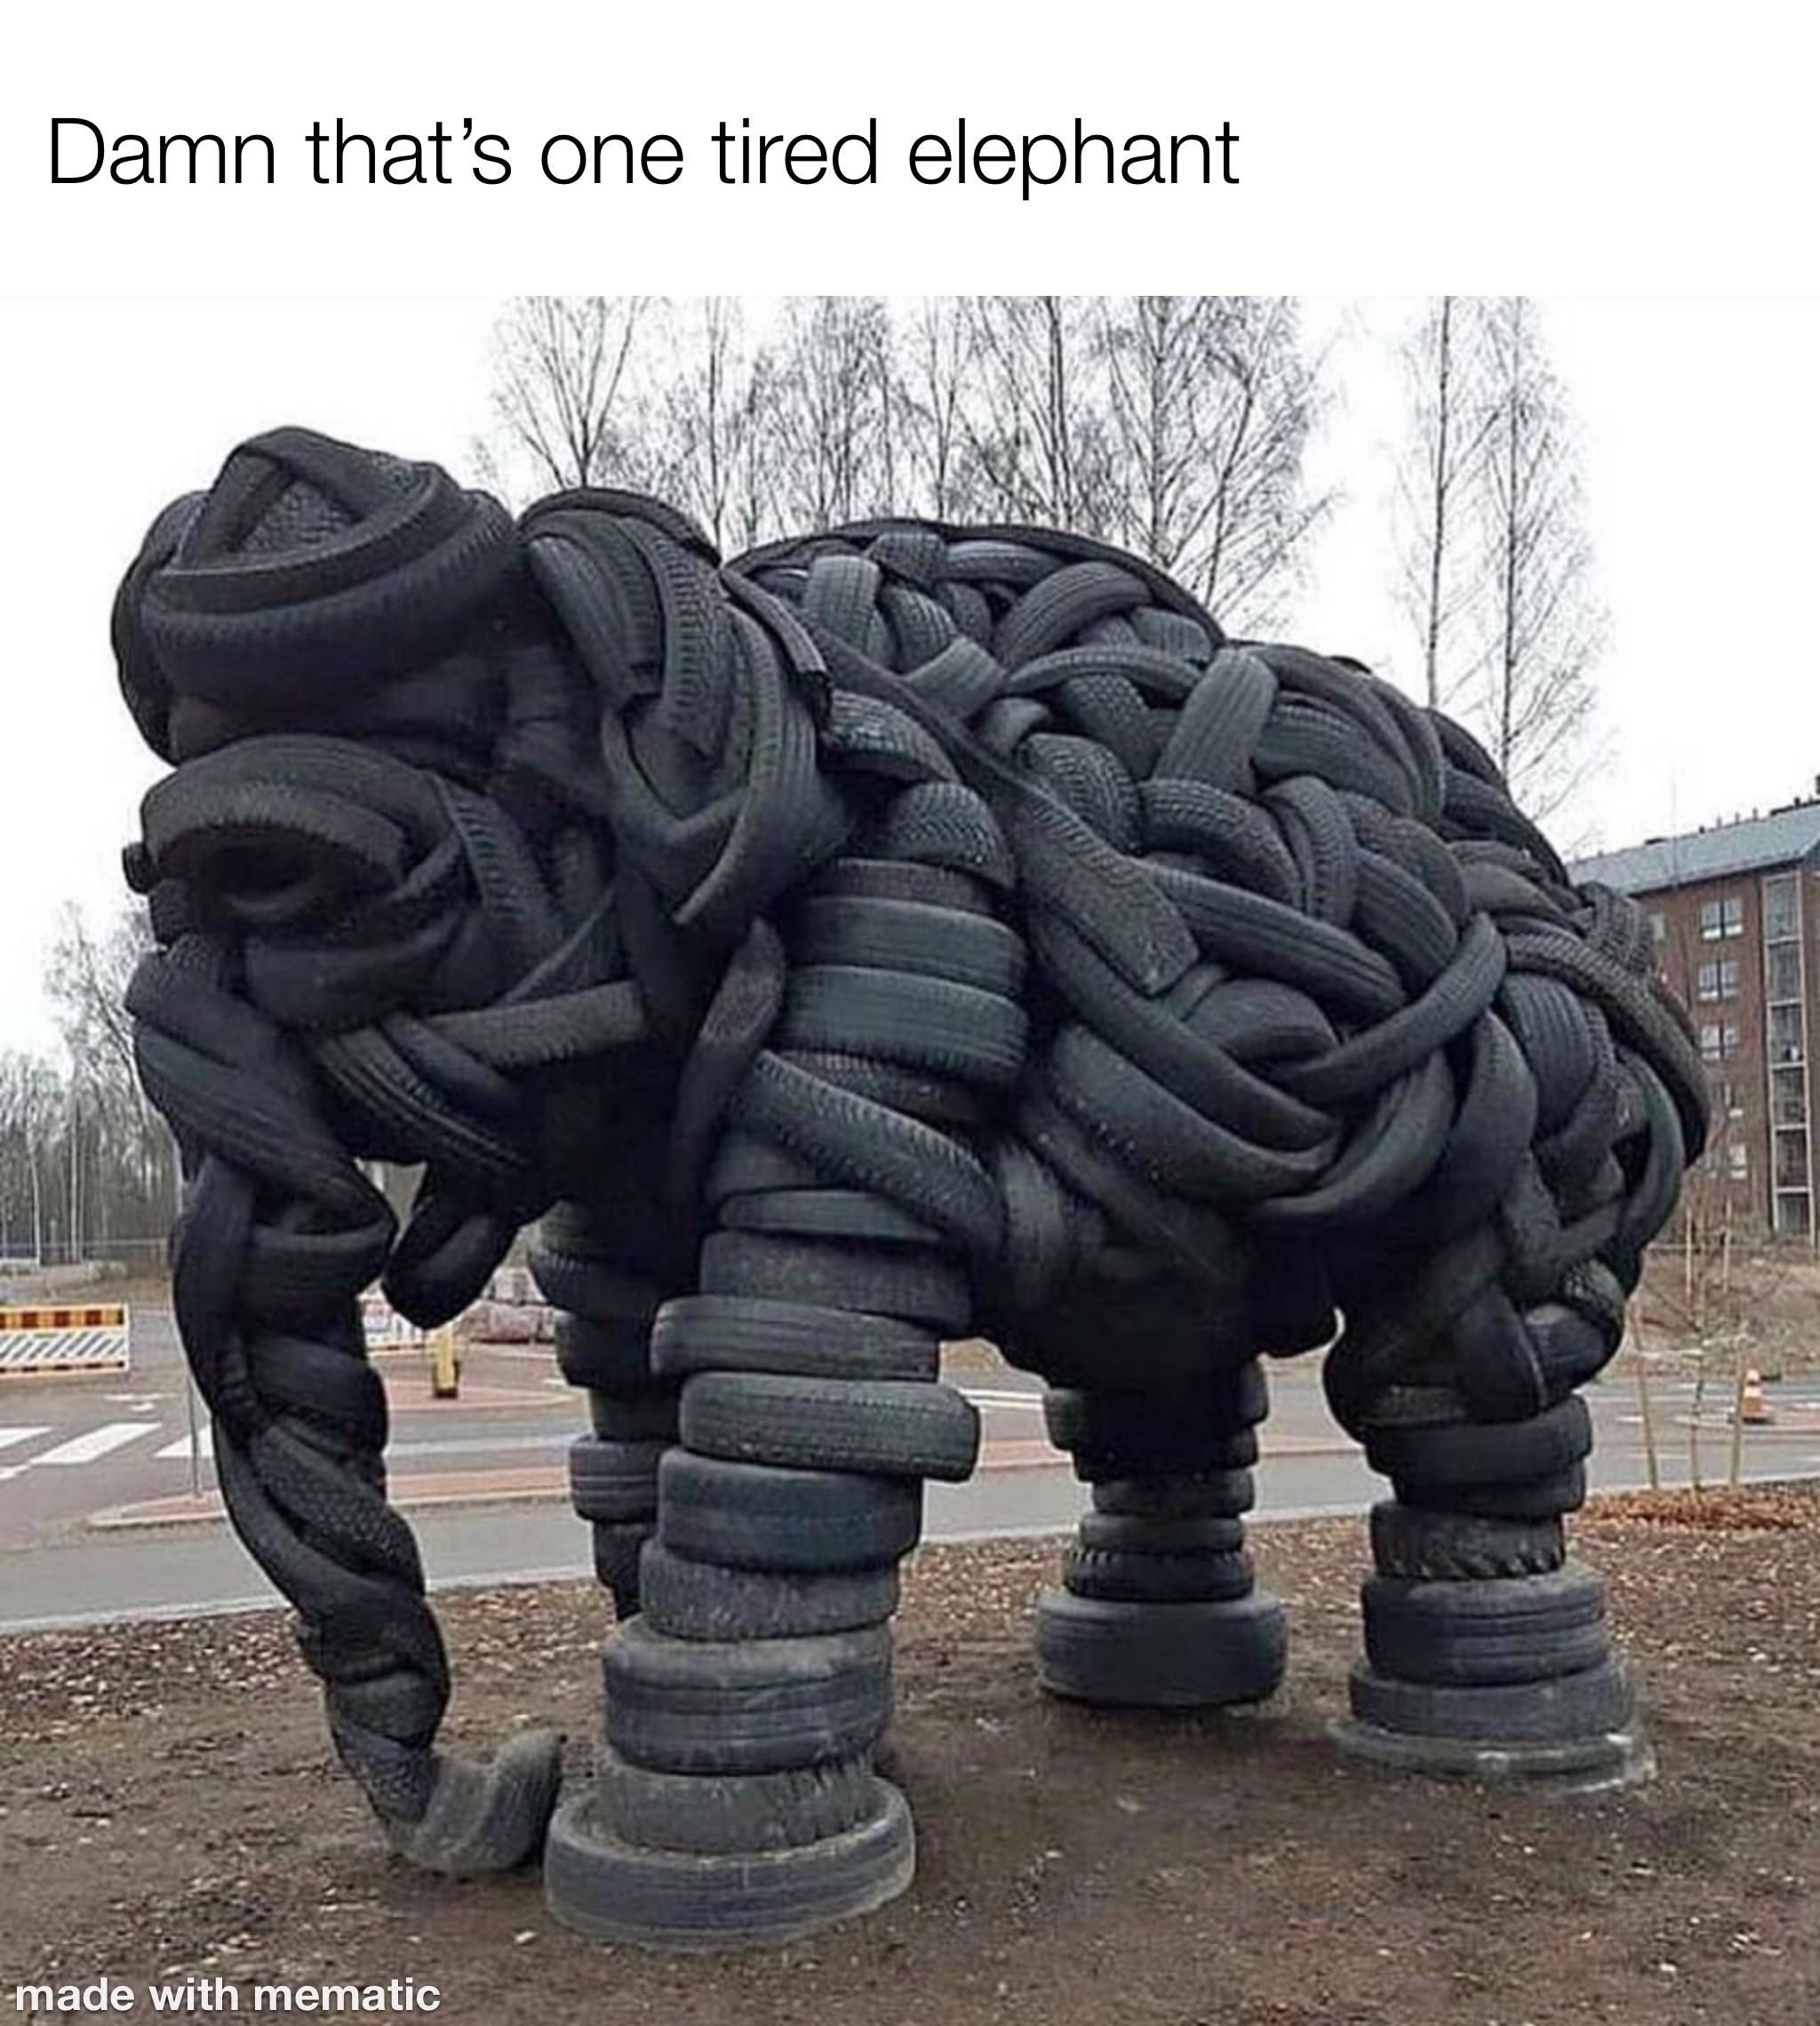 Poor elephant.